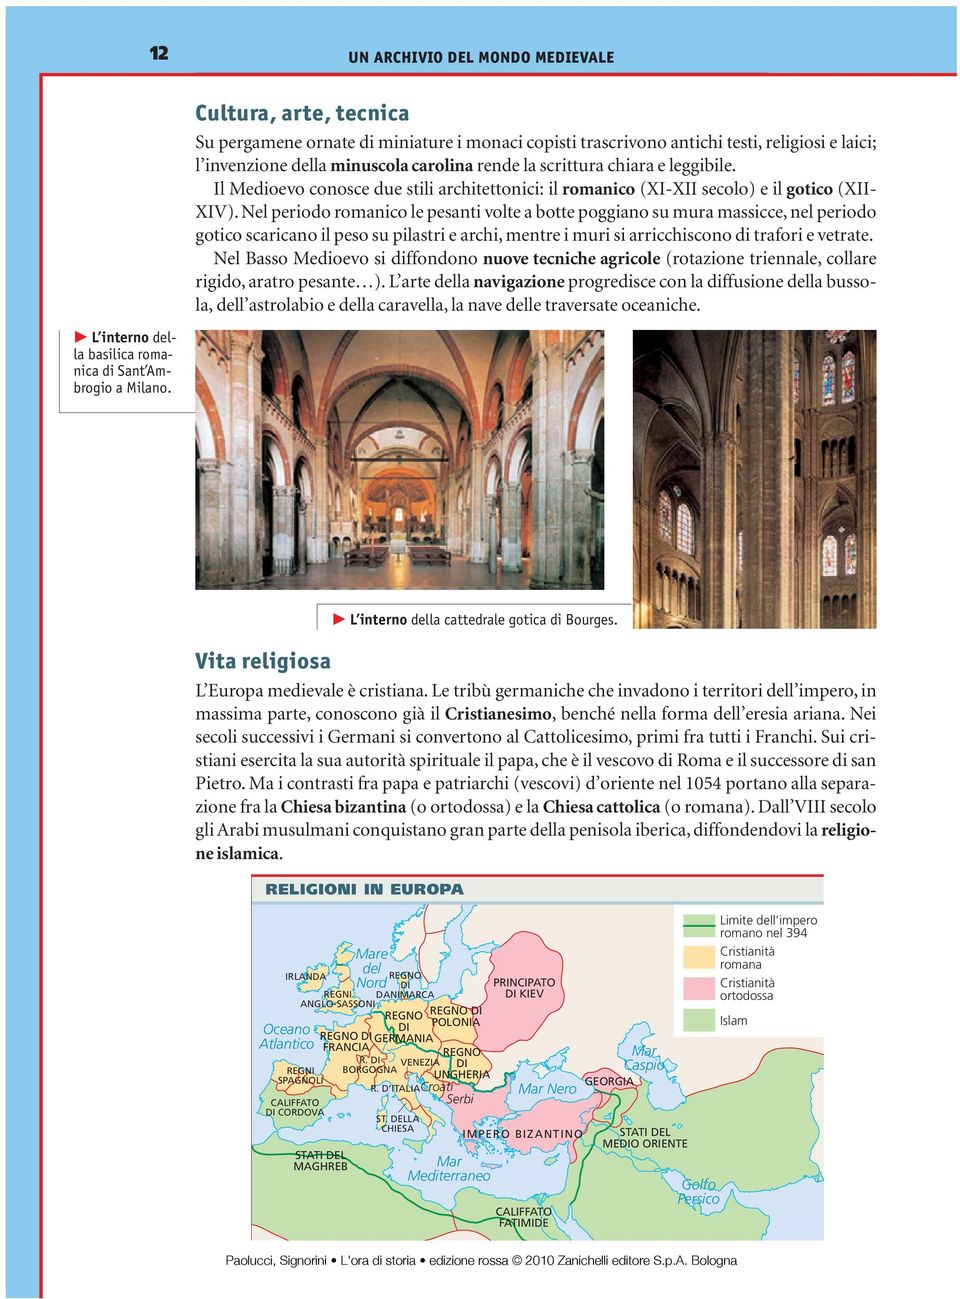 Il Medioevo conosce due stili architettonici: il romanico (XI-XII secolo) e il gotico (XII- XIV).